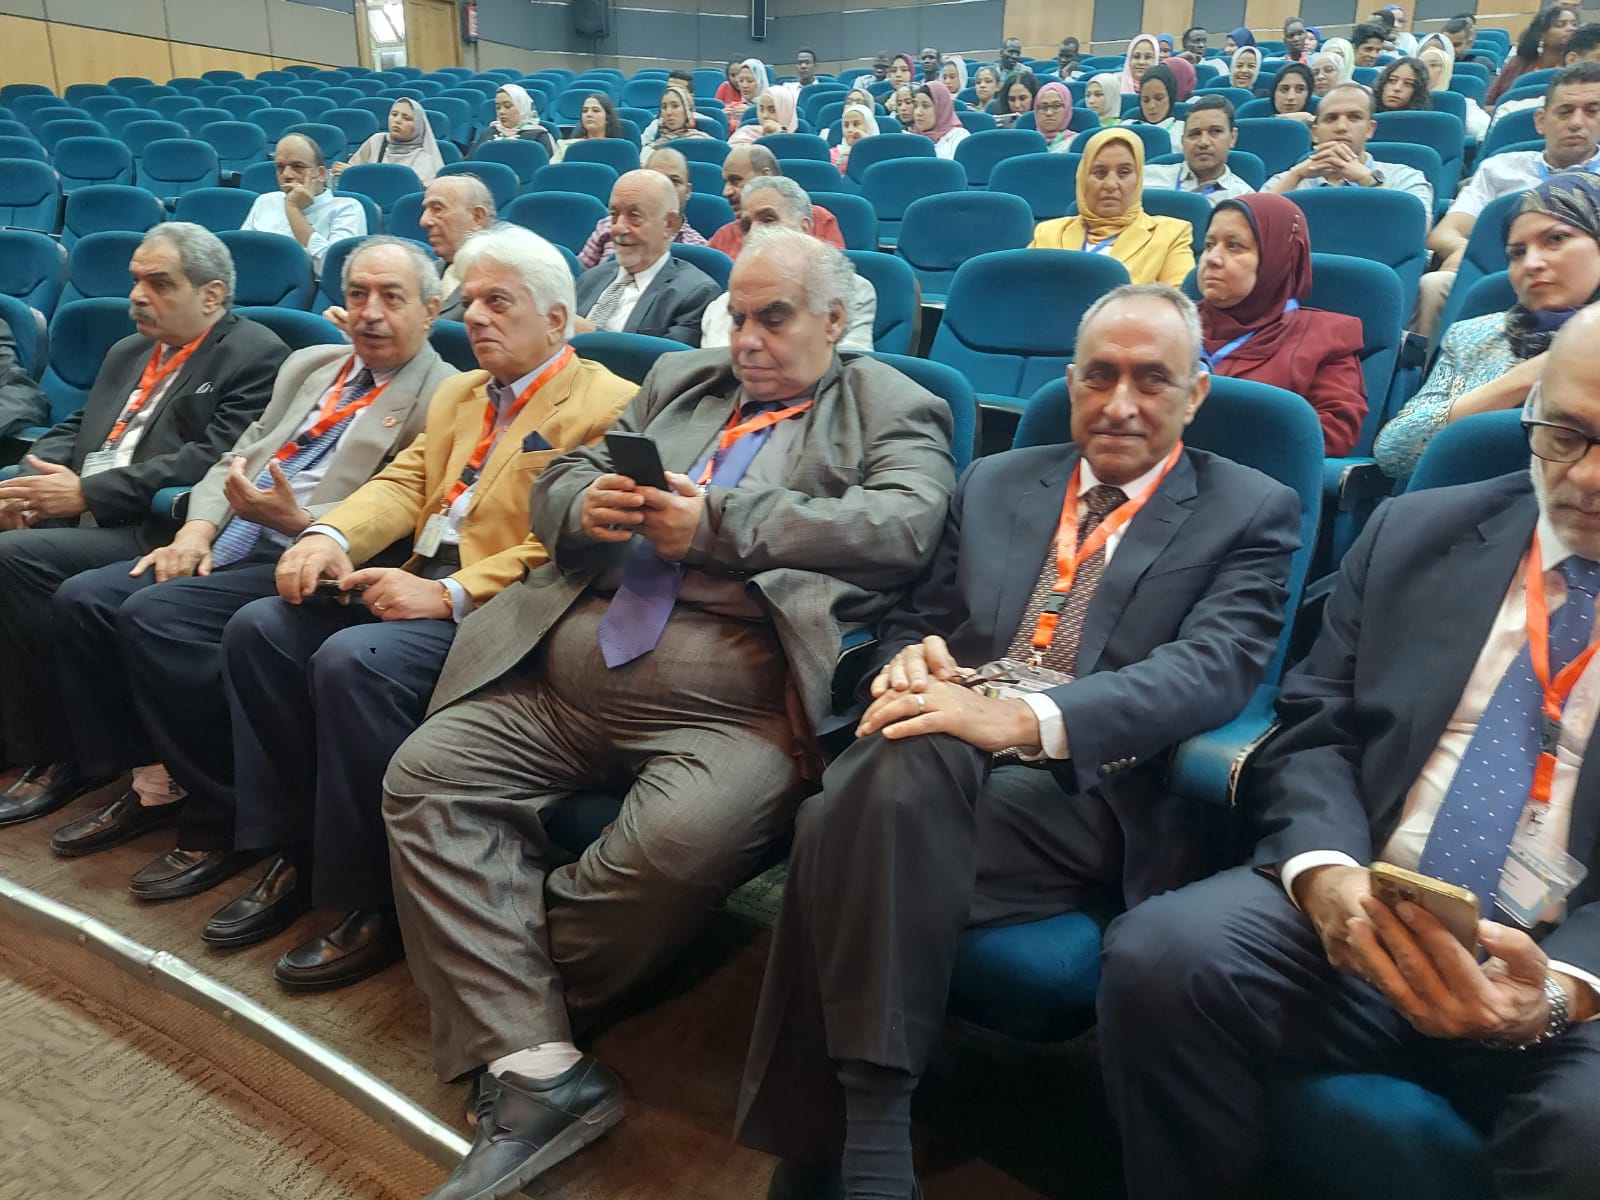 الدكتور أيمن فريد أبوحديد في مؤتمر المناخ في جامعة الاسكندرية